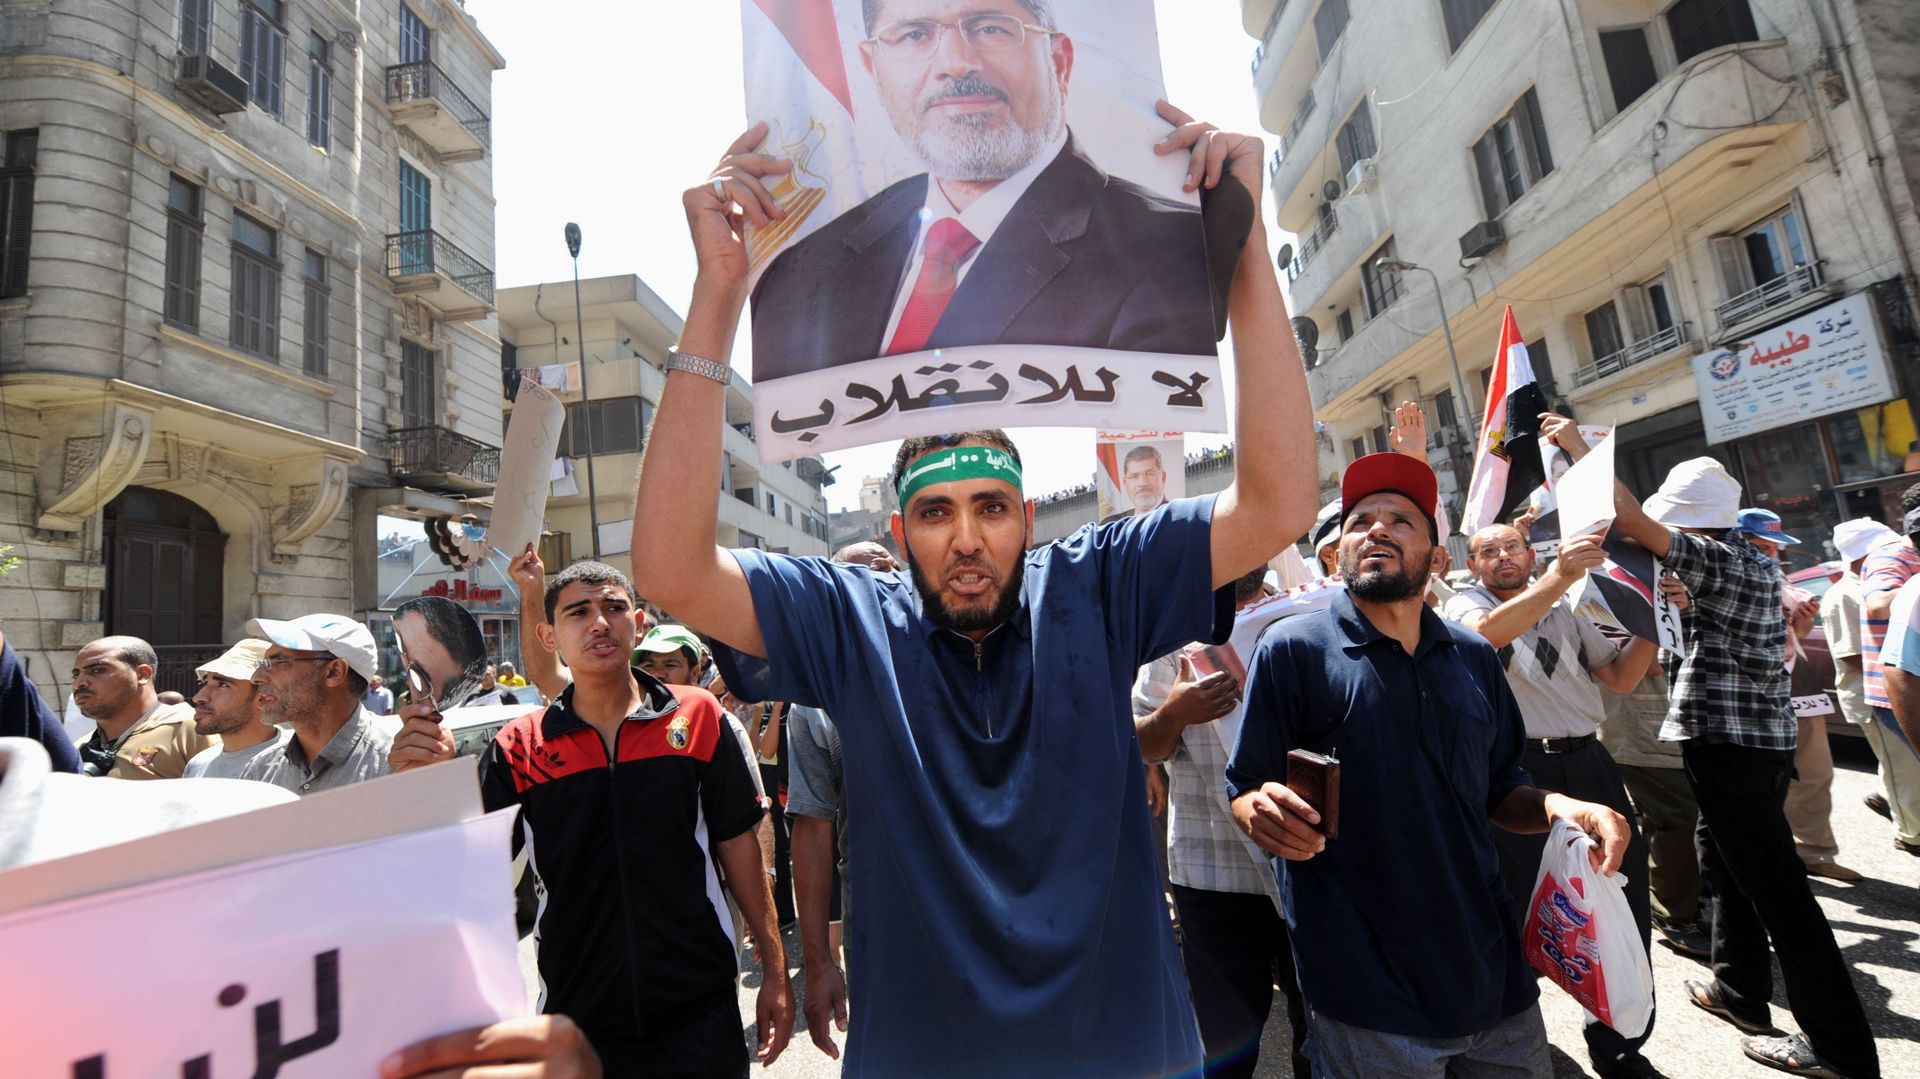 Des supporters de Mohamed Morsi manifestent pour sa libération, au Caire